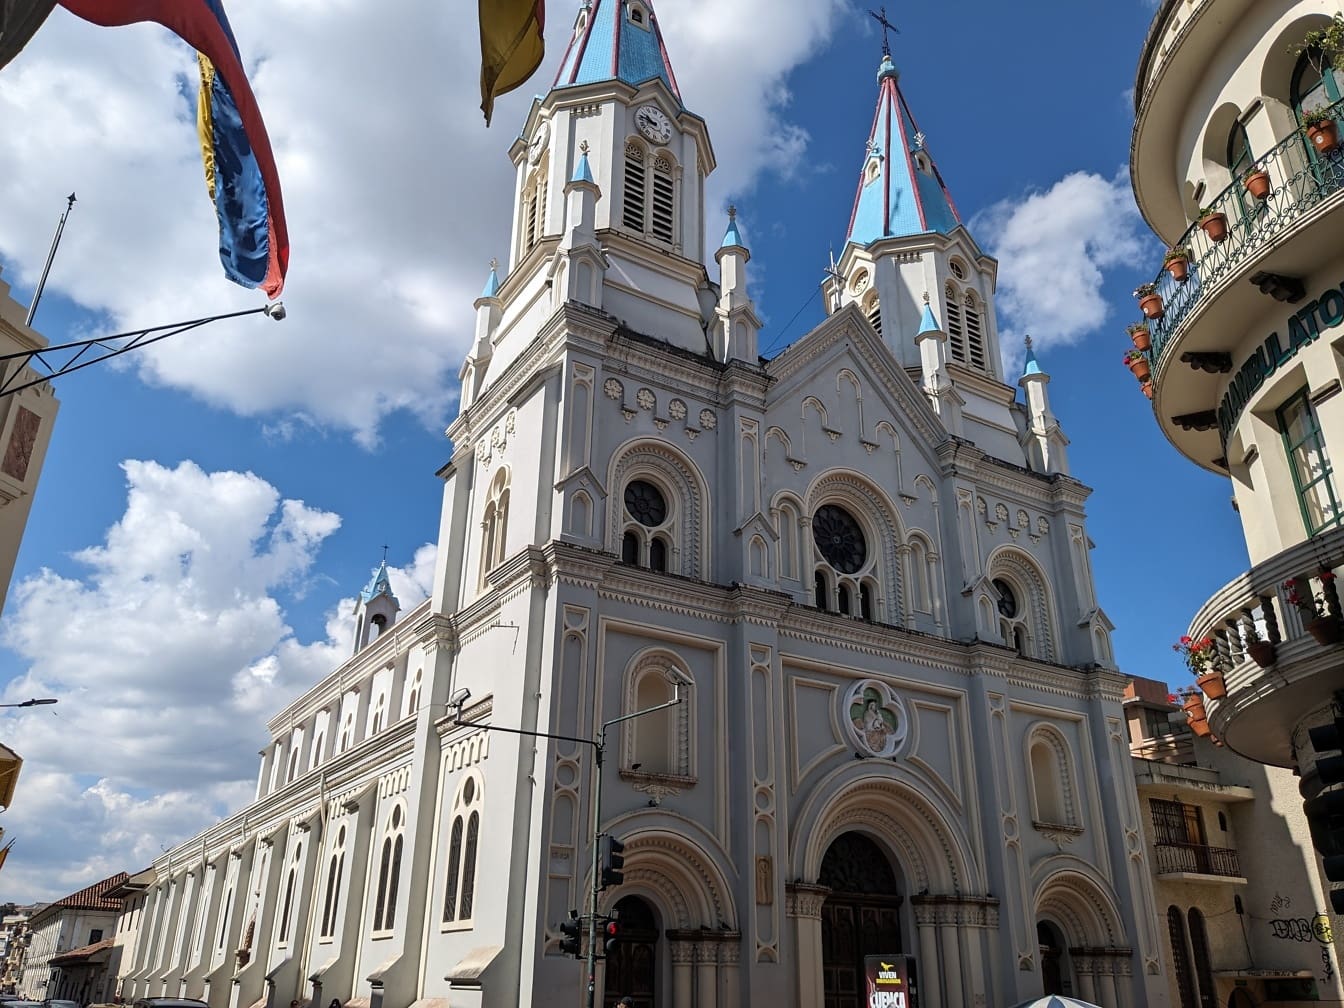 Basilika Our Lady of Perpetual Help atau gereja St. Alfonsus (San Alfonso) di kota Cuenca, Ekuador